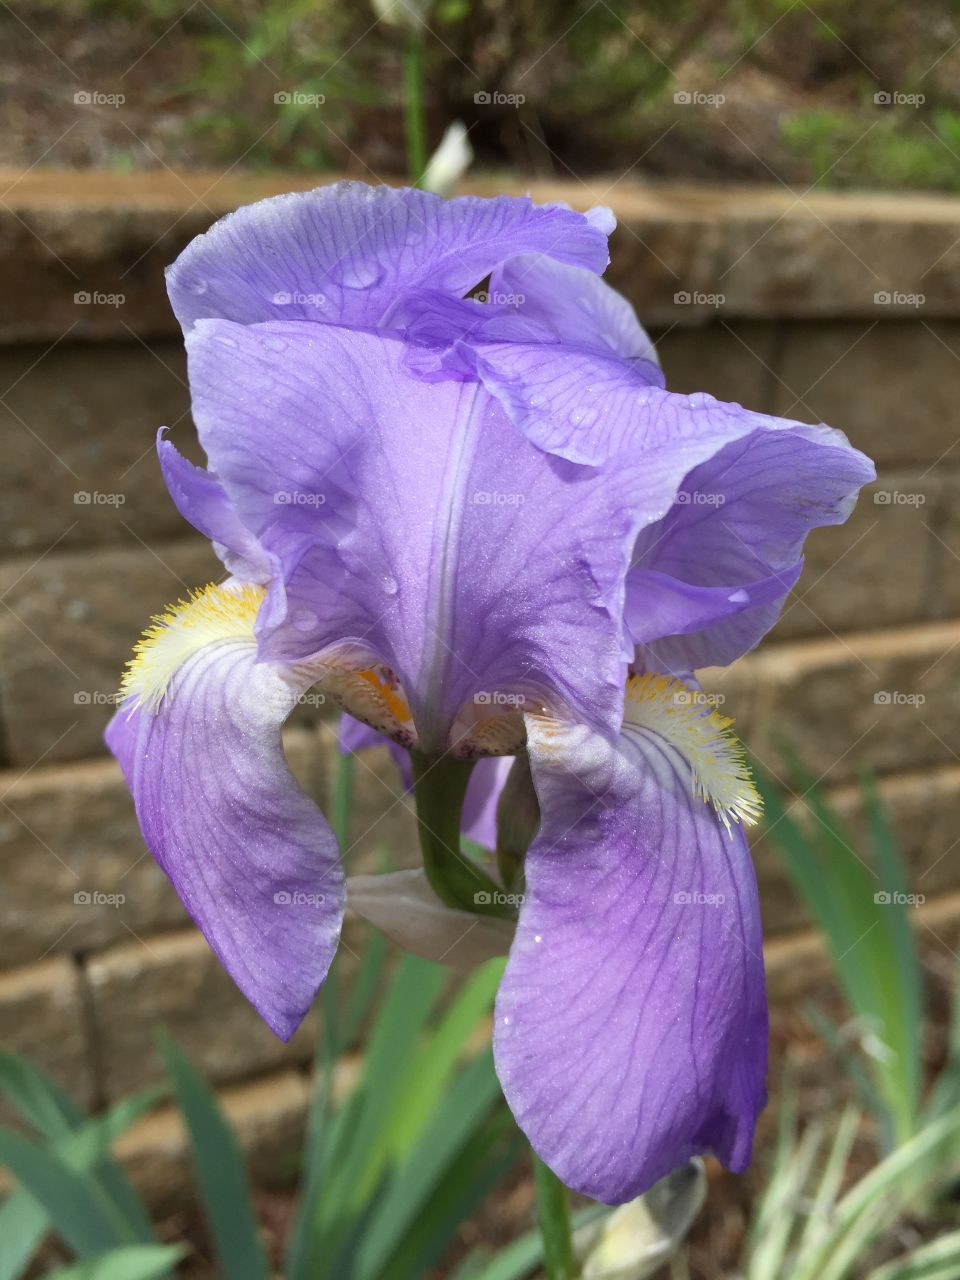 Purple iris blooming outdoors